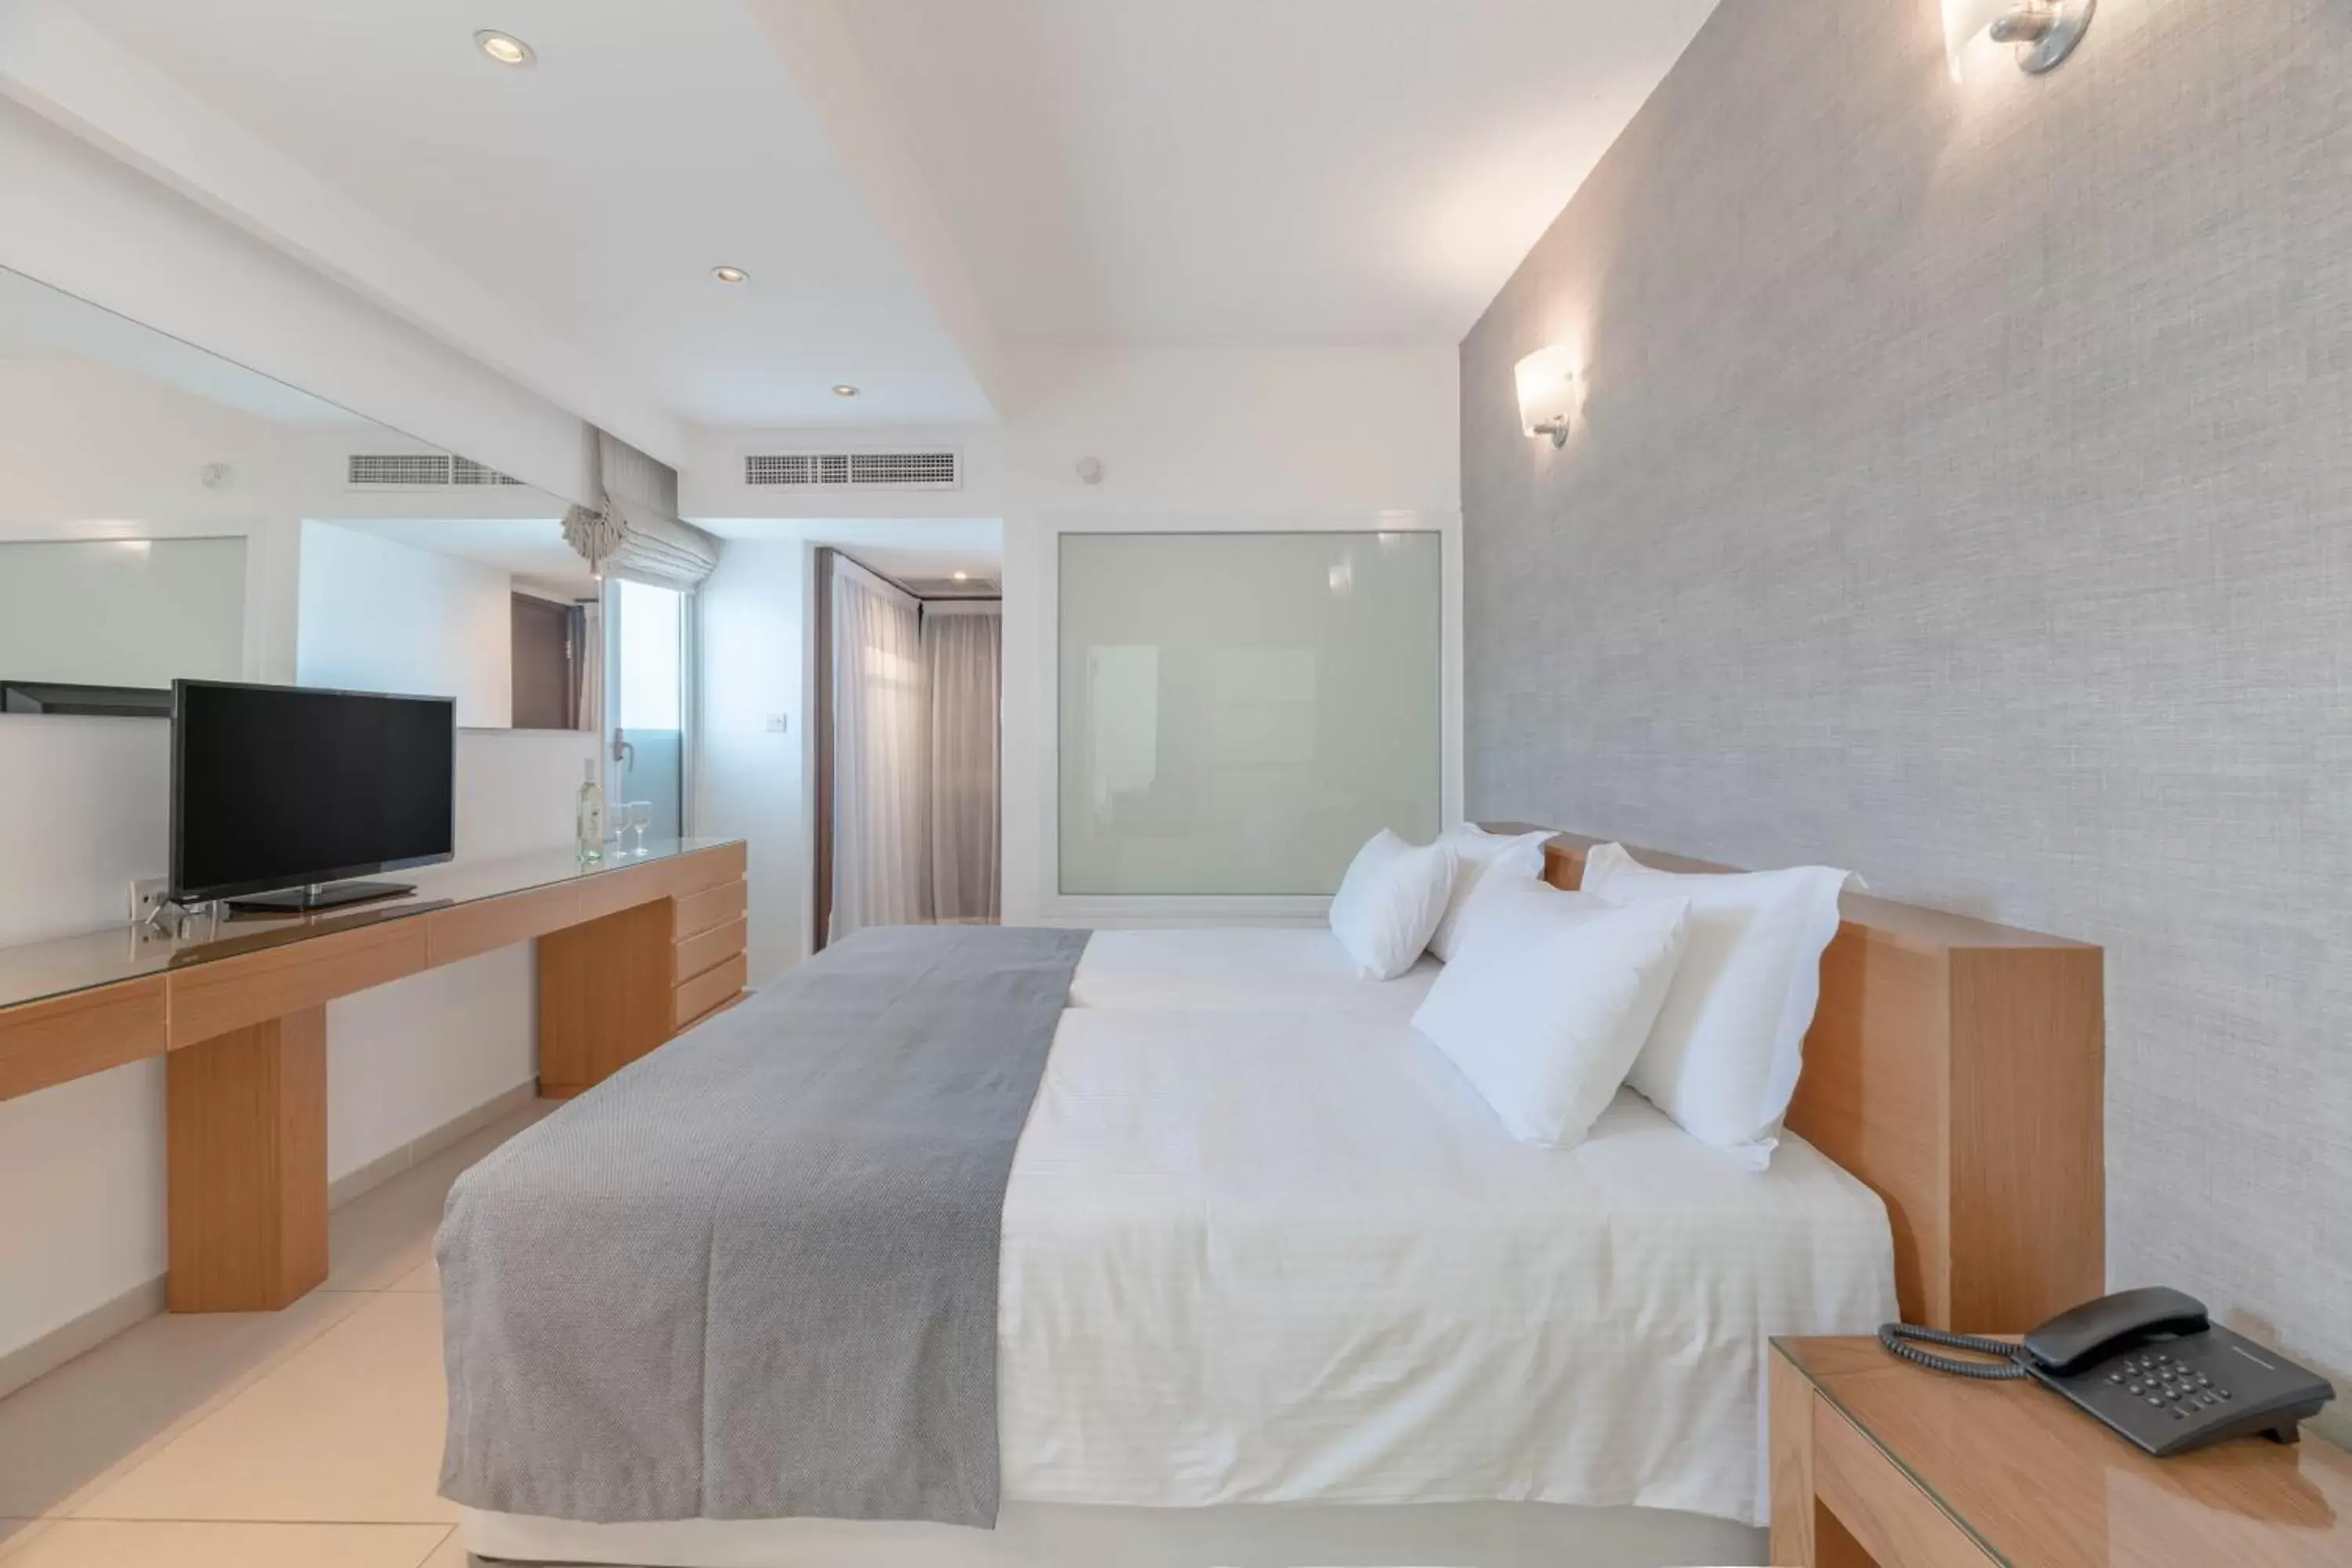 Bathroom, Bed in Napa Mermaid Hotel & Suites